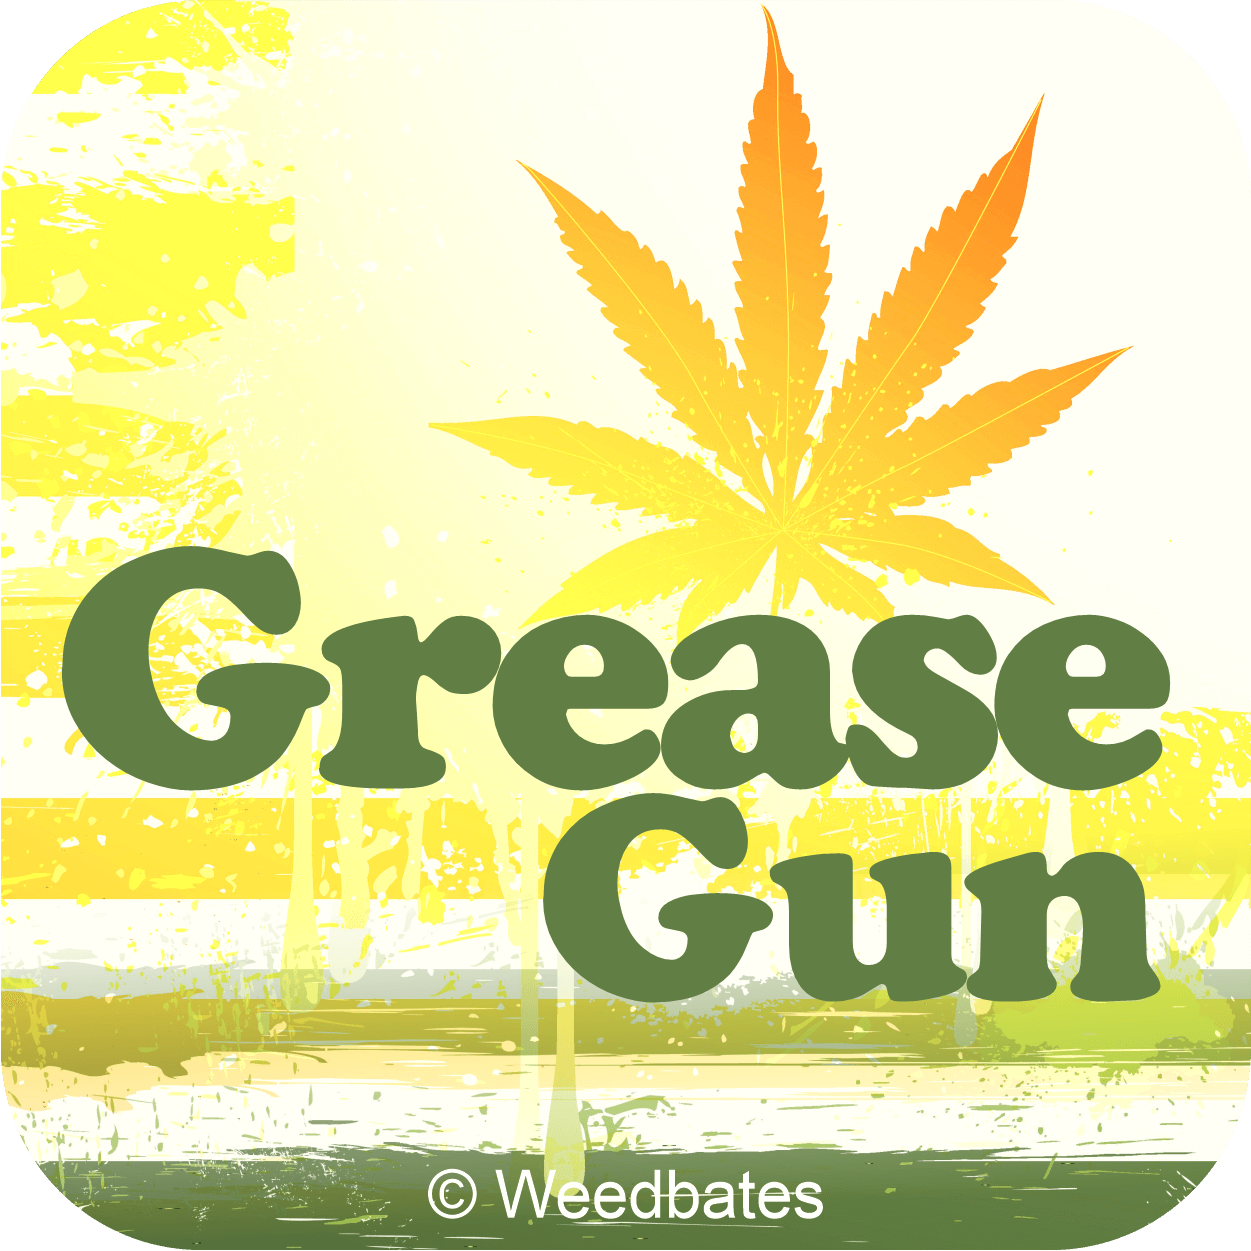 Growing Grease Gun weed